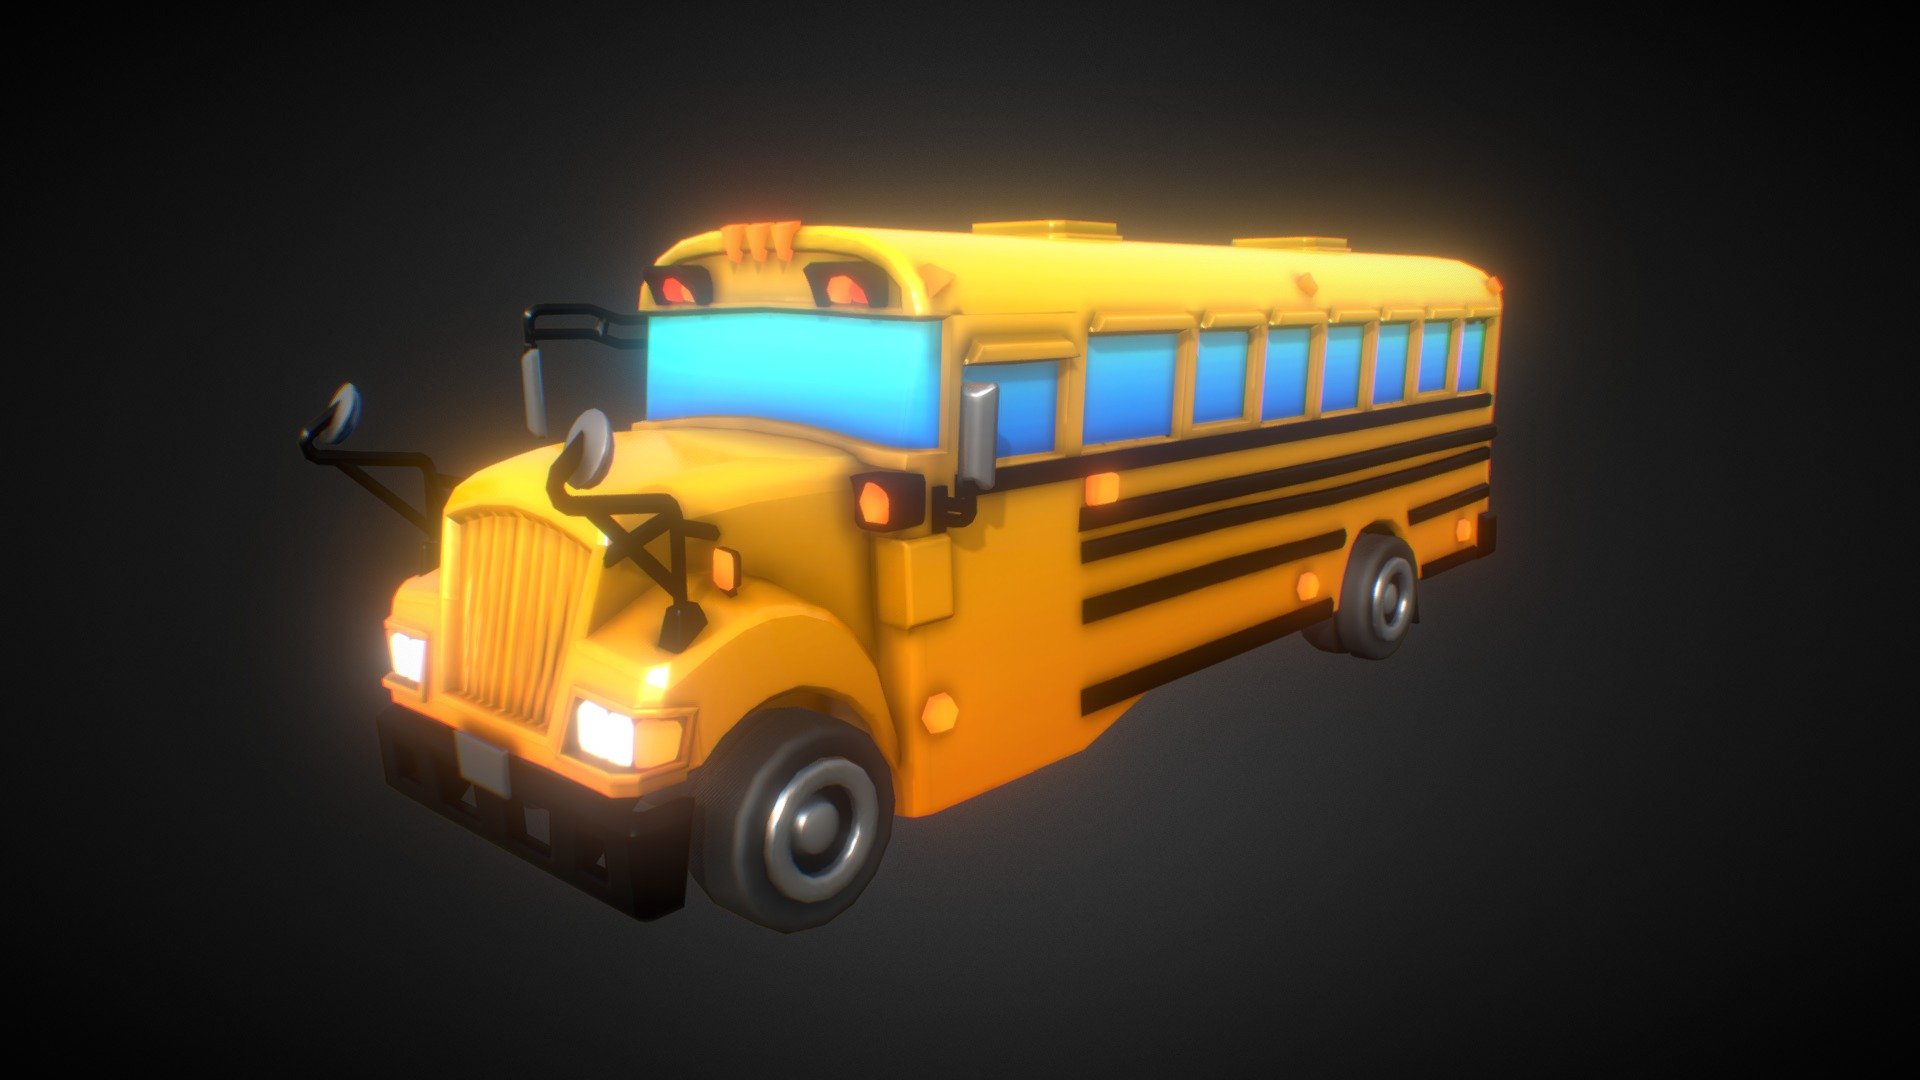 https://play.google.com/store/apps/details?id=com.GreenGames.TigerRun&amp;gl=BE - Cartoon Bus - 3D model by comrade.barry 3d model